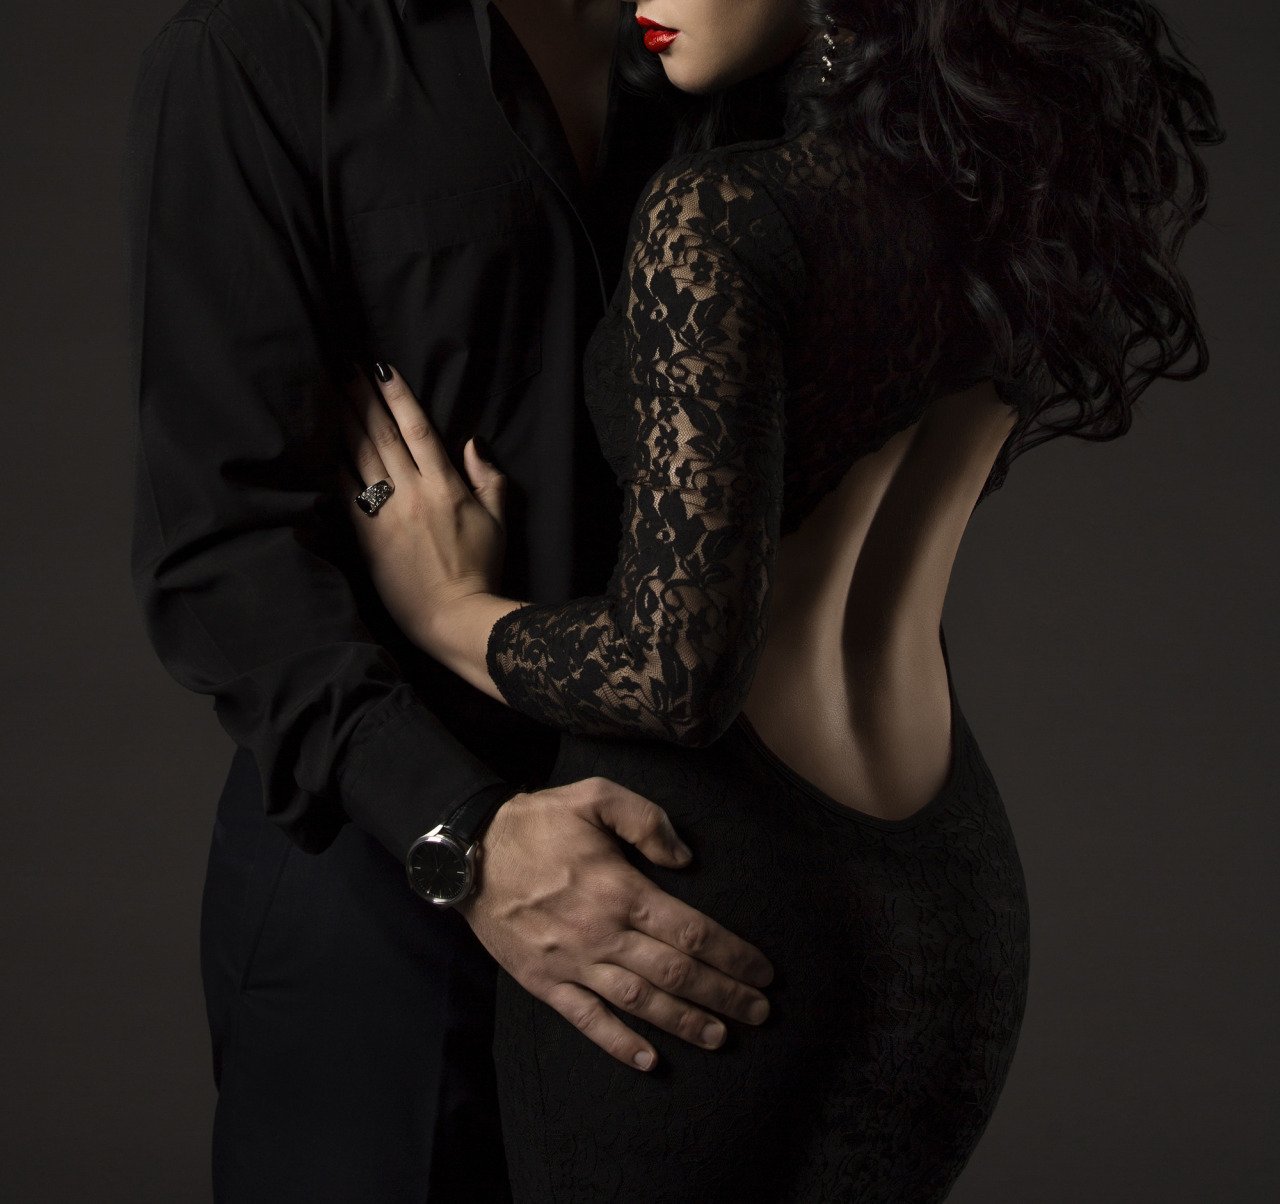 Мир полон соблазна. Мужчина и женщина страсть. Девушка в Вечернем платье с мужчиной. Элегантные мужчина и женщина. Фотосессия в черном платье.